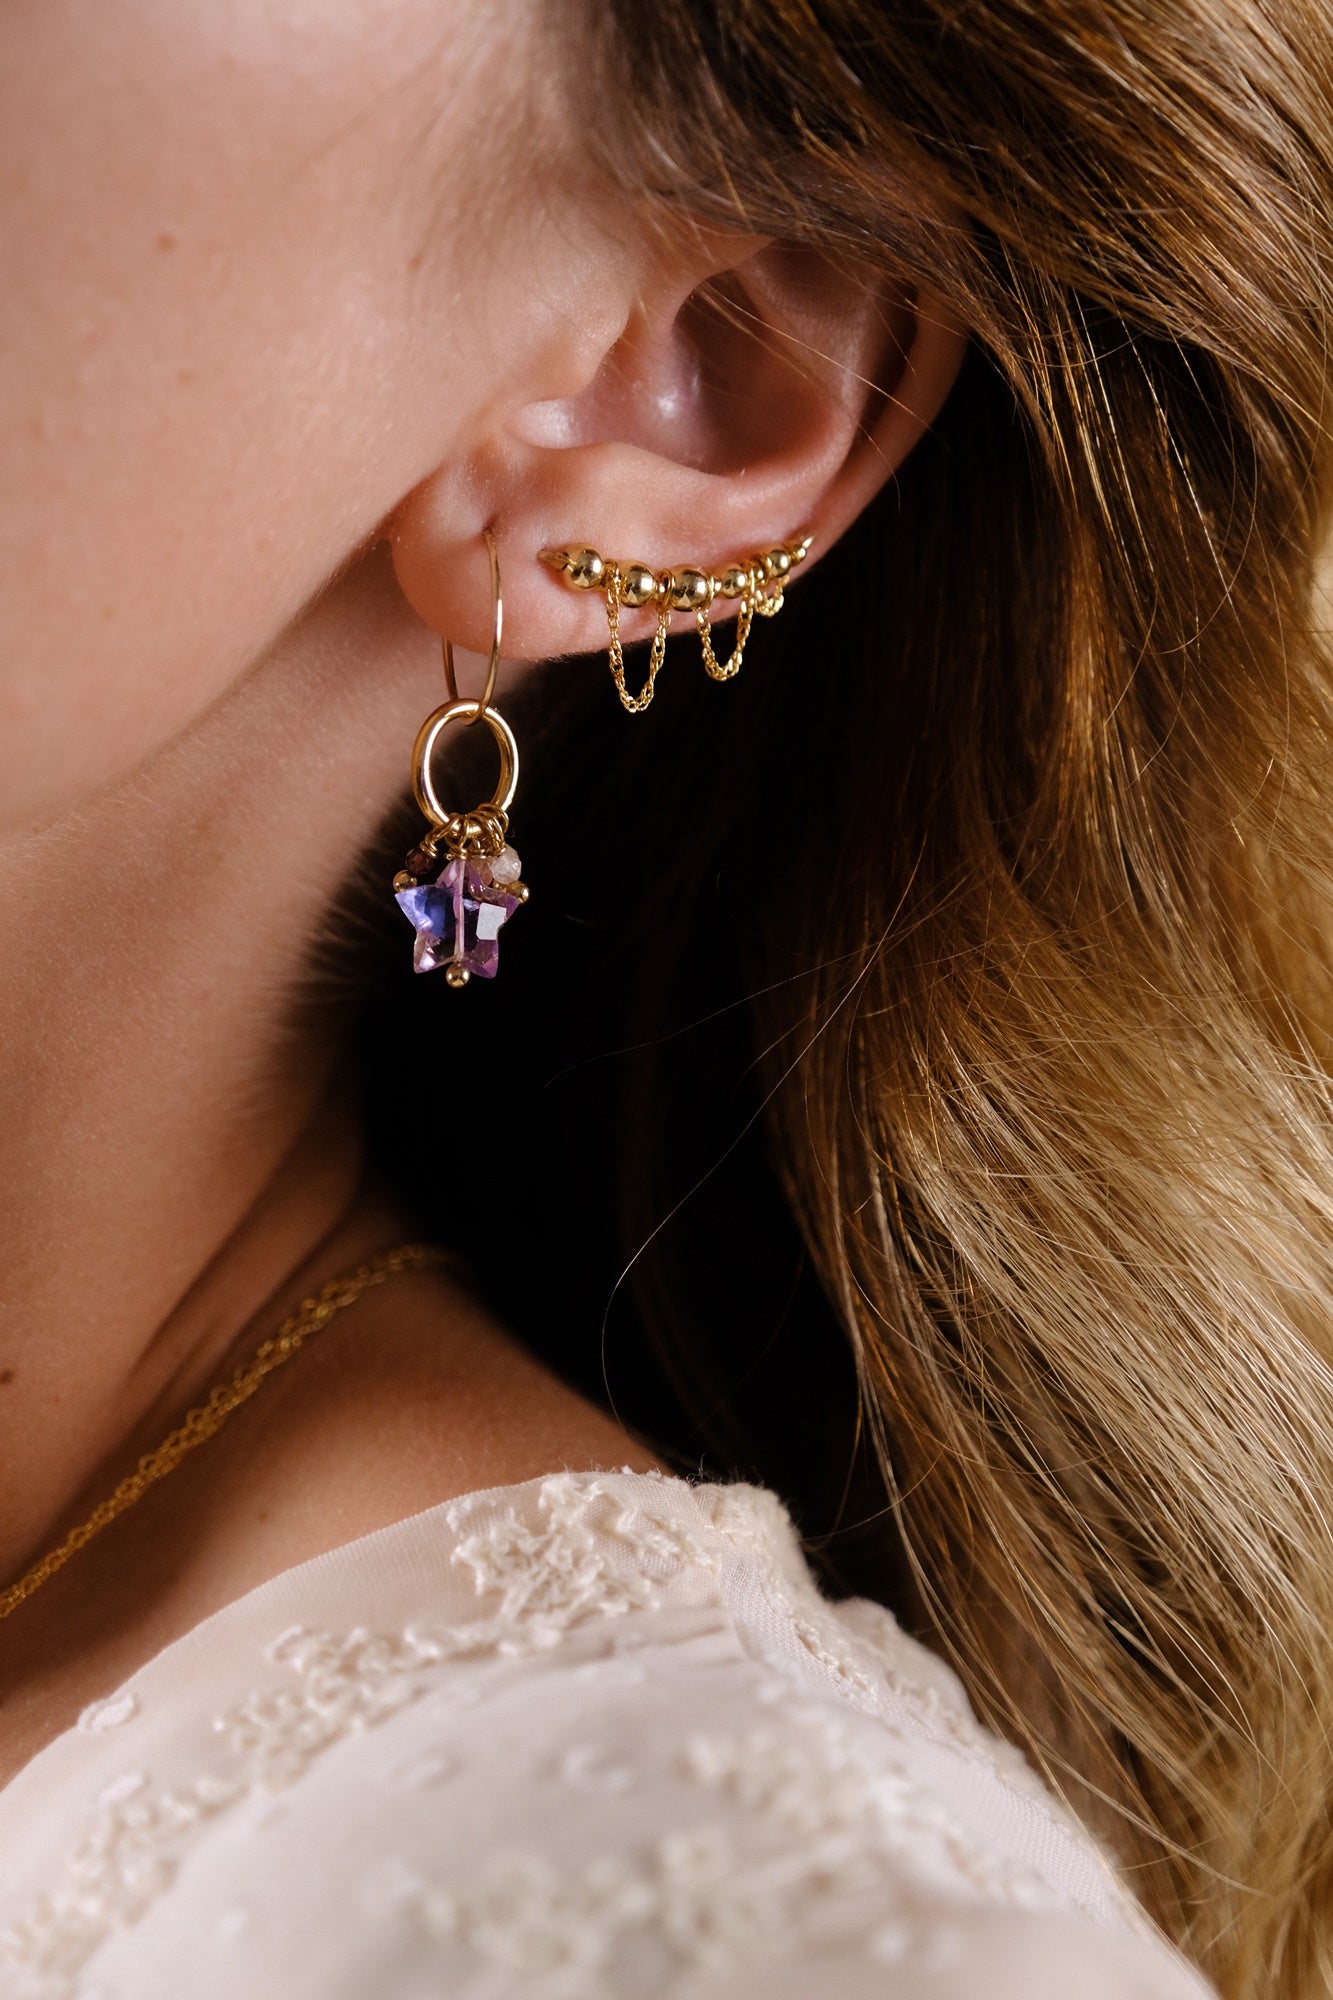 “Joy” earrings (your choice)